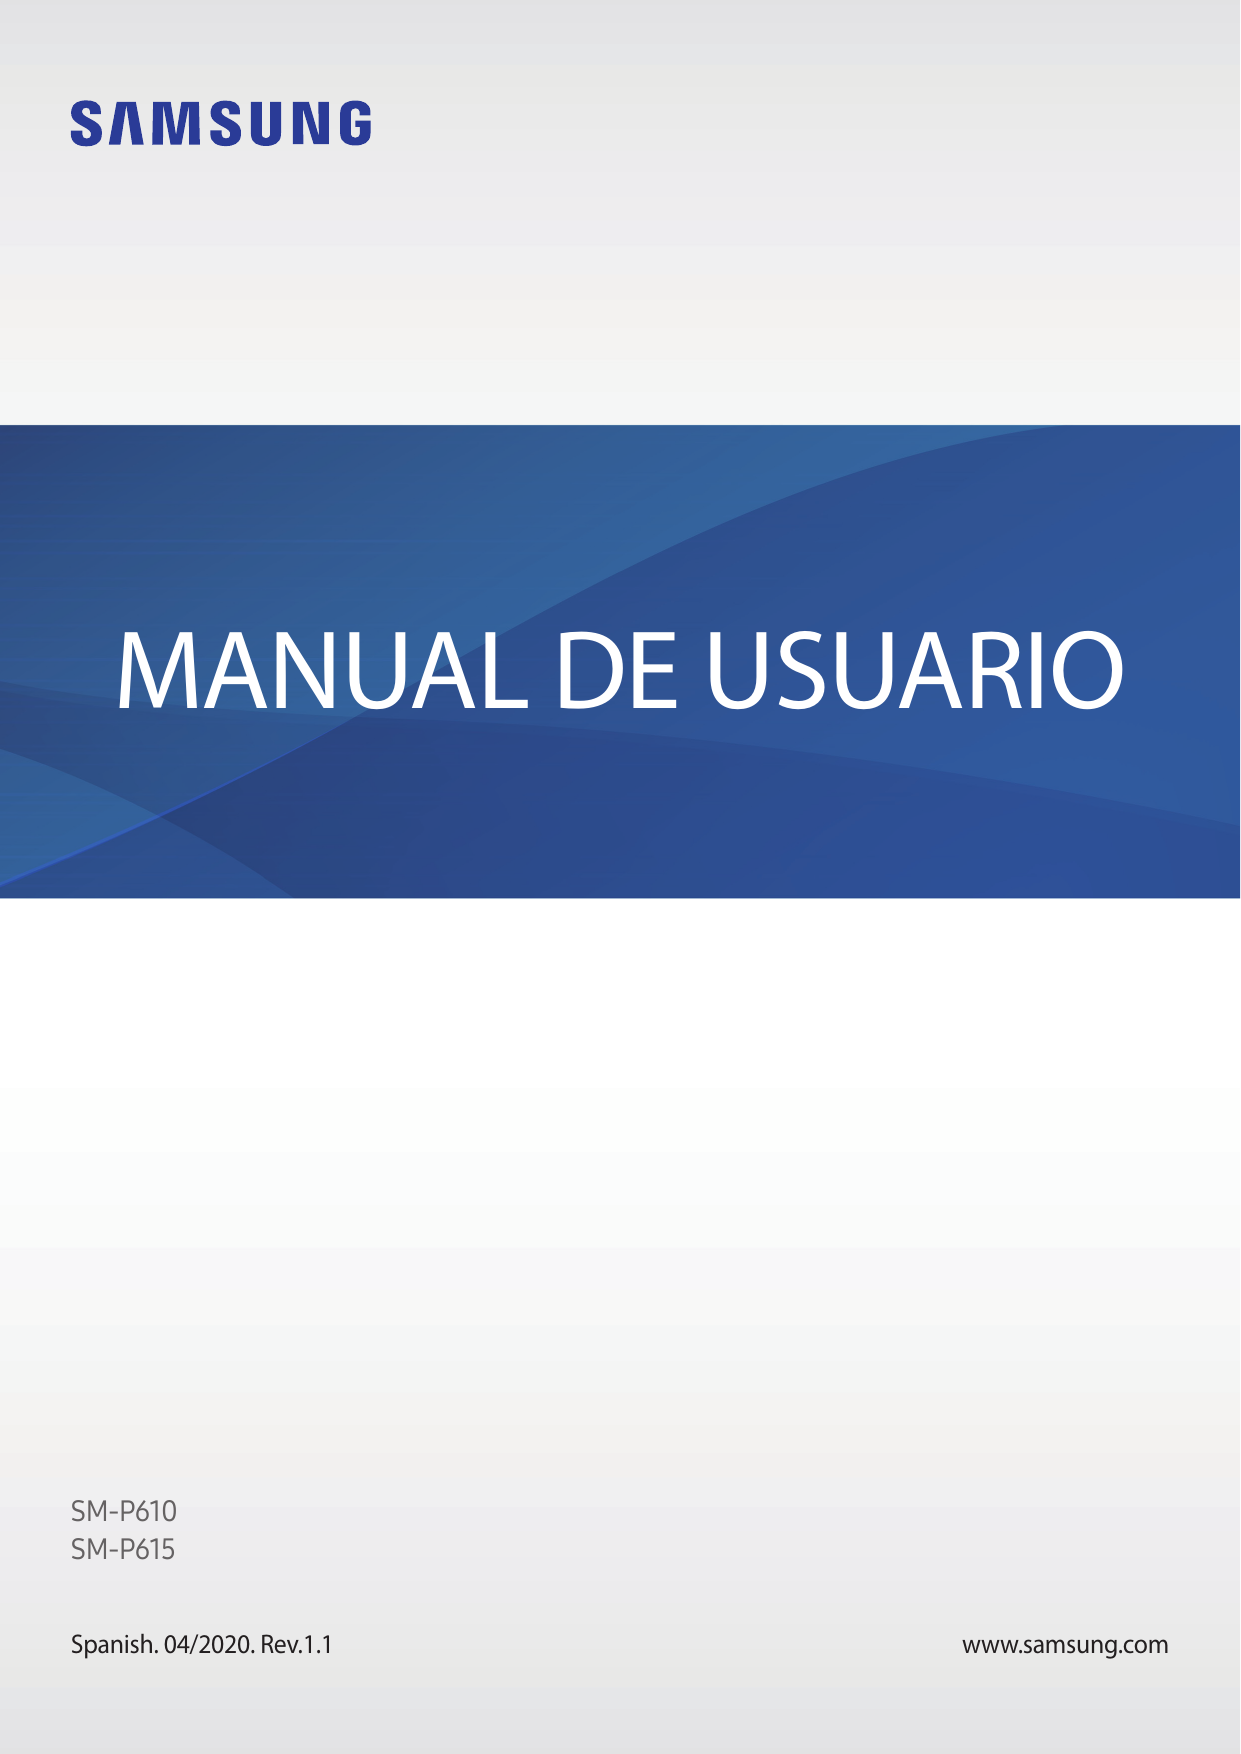 MANUAL DE USUARIOSM-P610SM-P615Spanish. 04/2020. Rev.1.1www.samsung.com